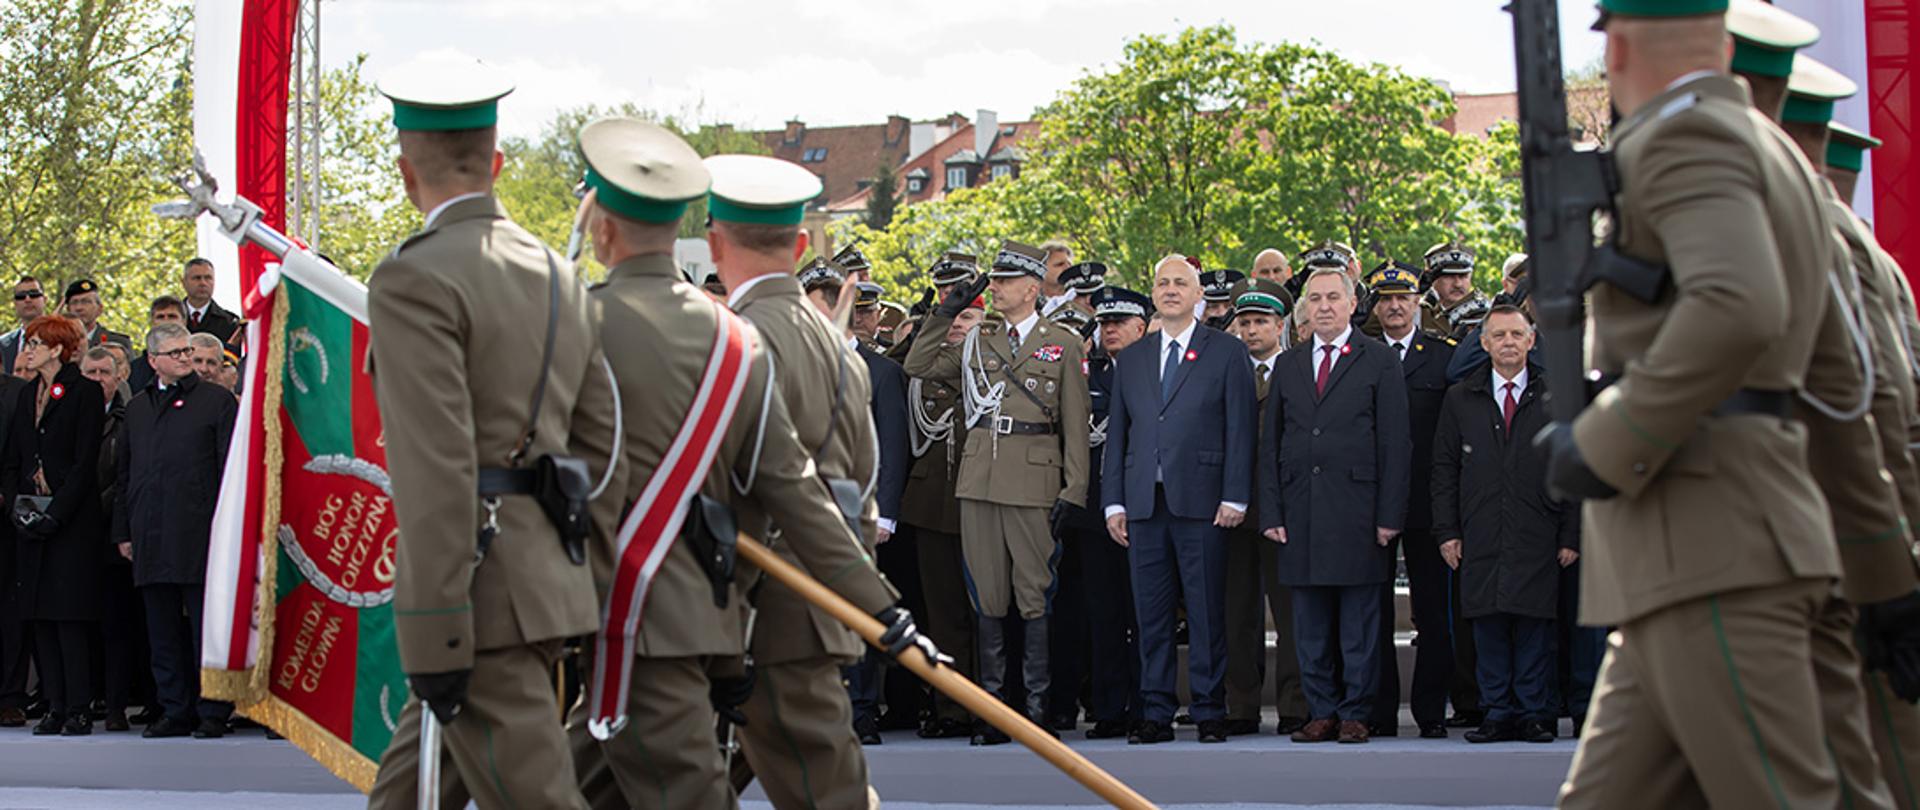 Minister Joachim Brudziński uczestniczył w Wielkiej Defiladzie "Silni w sojuszach".